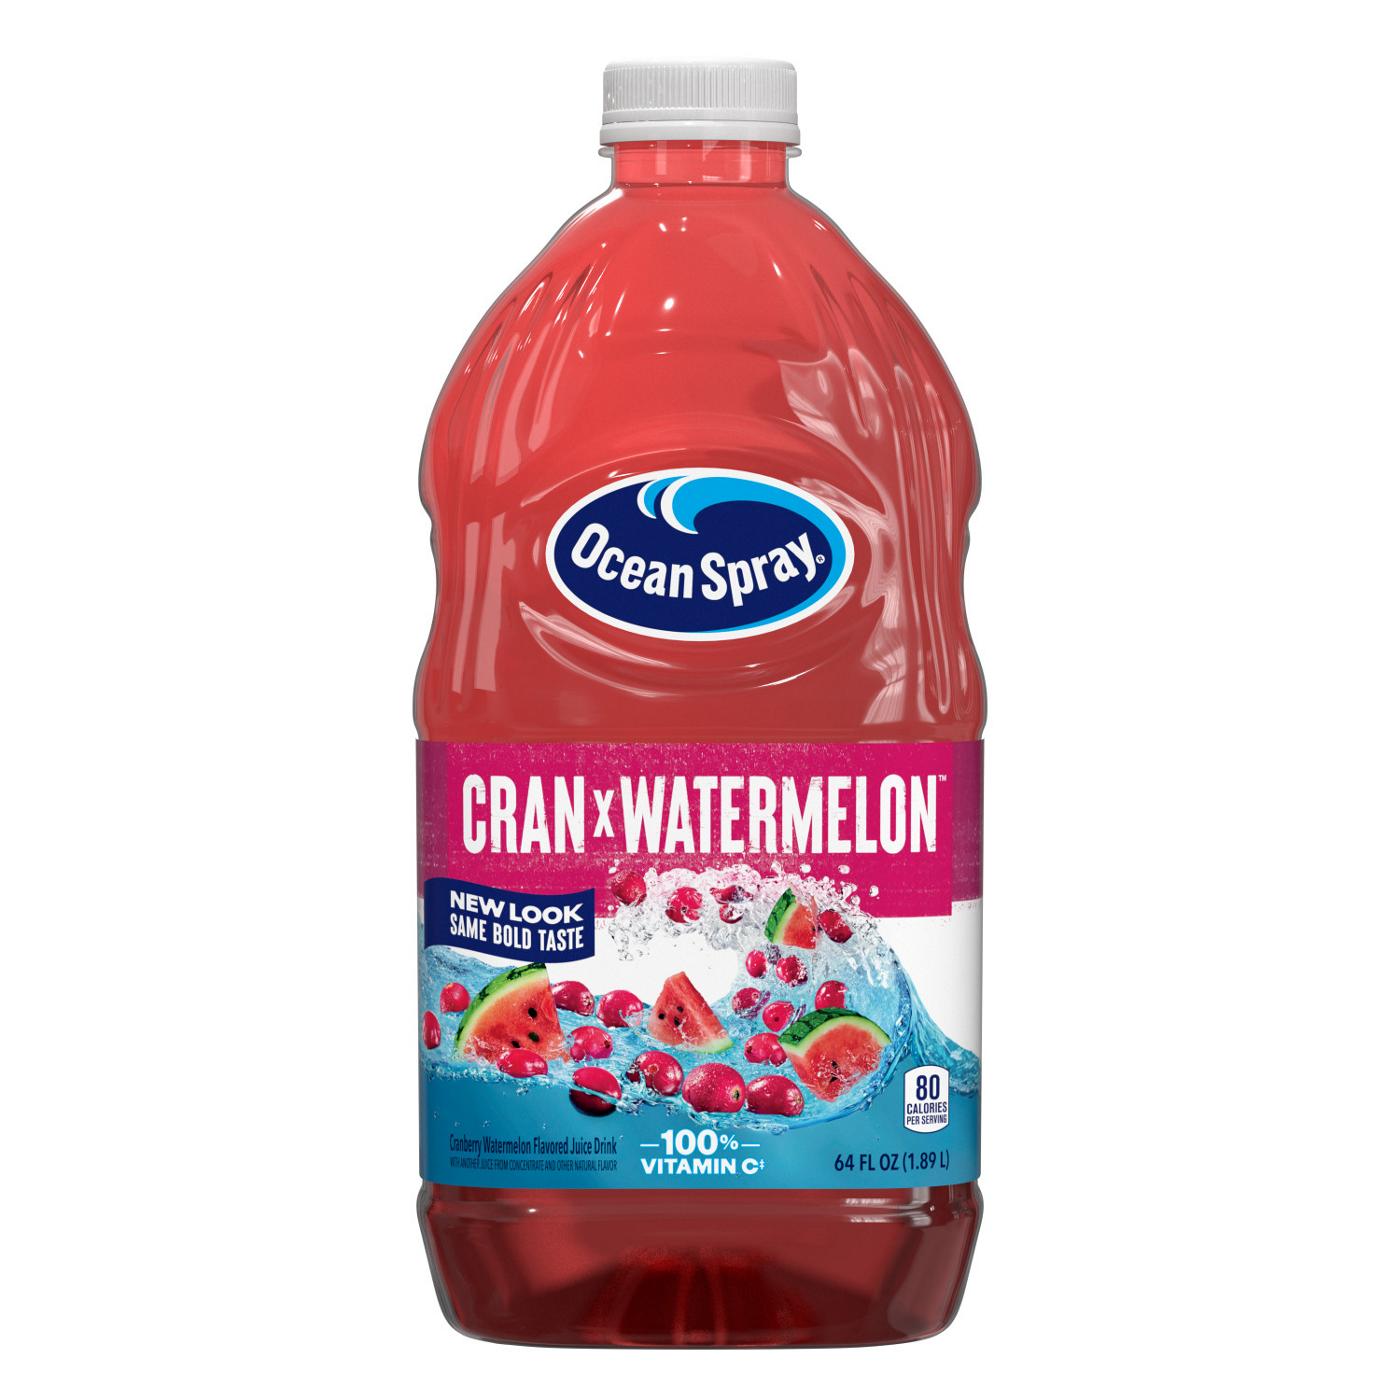 Ocean Spray Cran-Watermelon Juice Drink; image 1 of 6